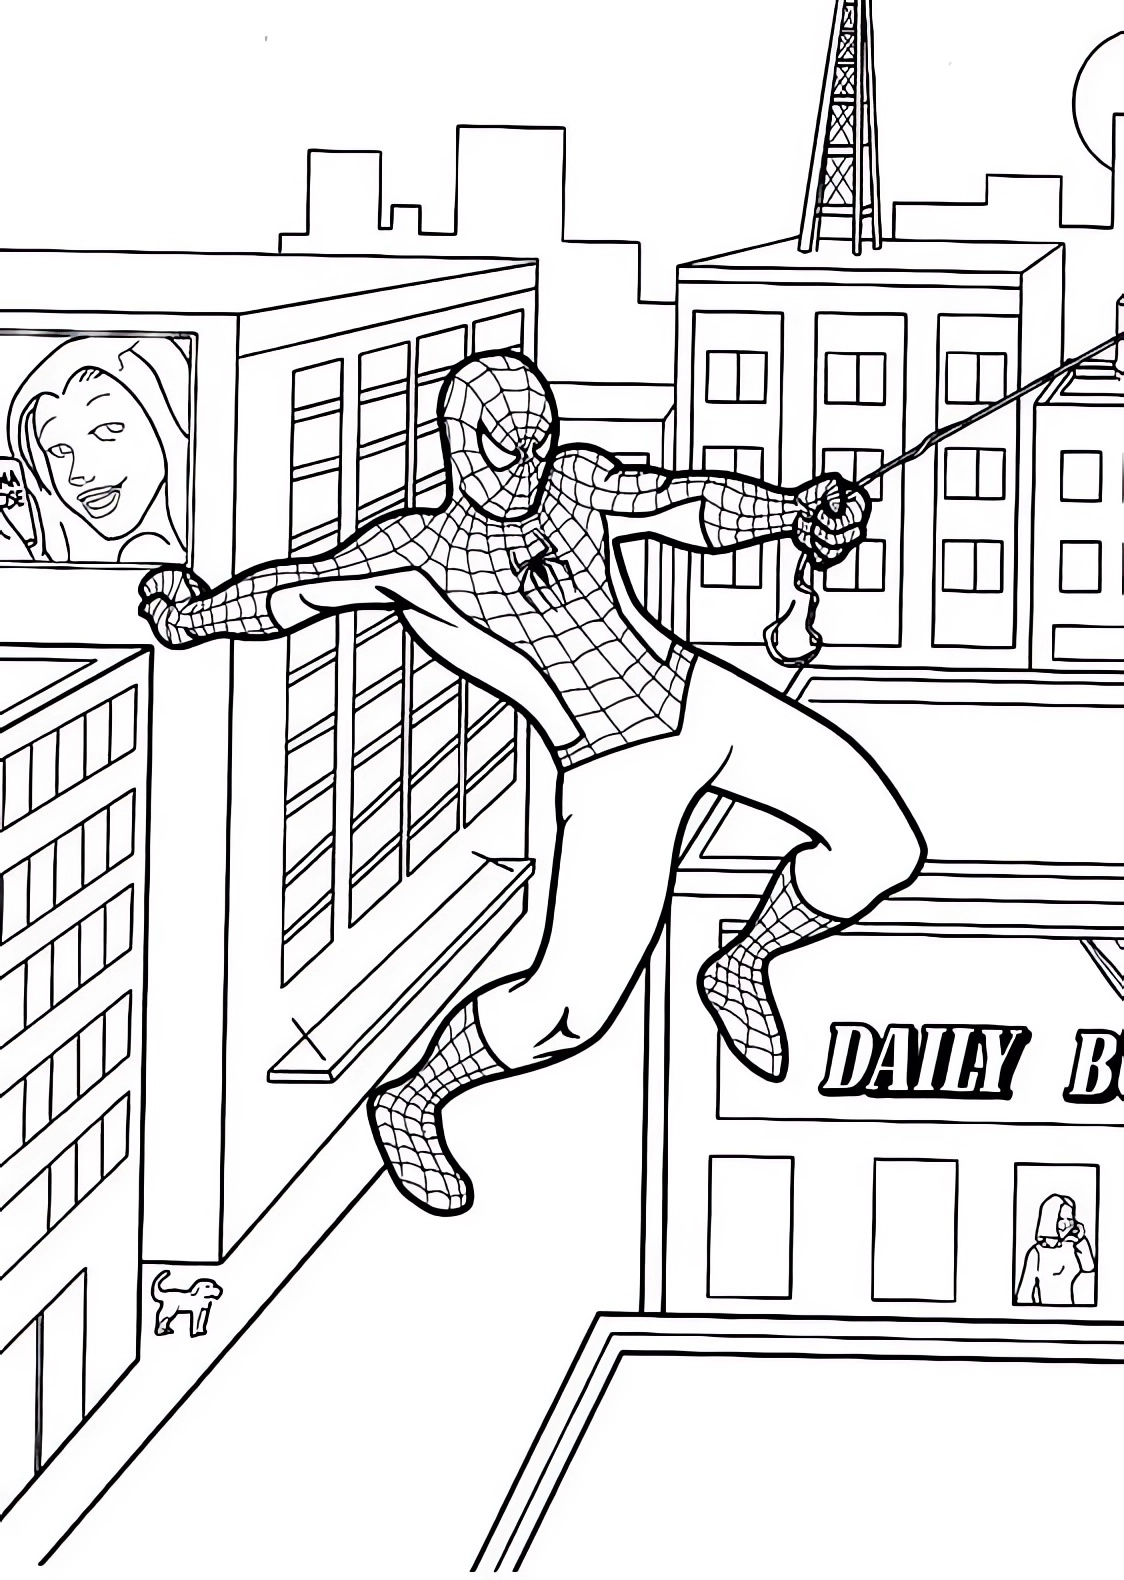 Spiderman entre los edificios para imprimir y colorear